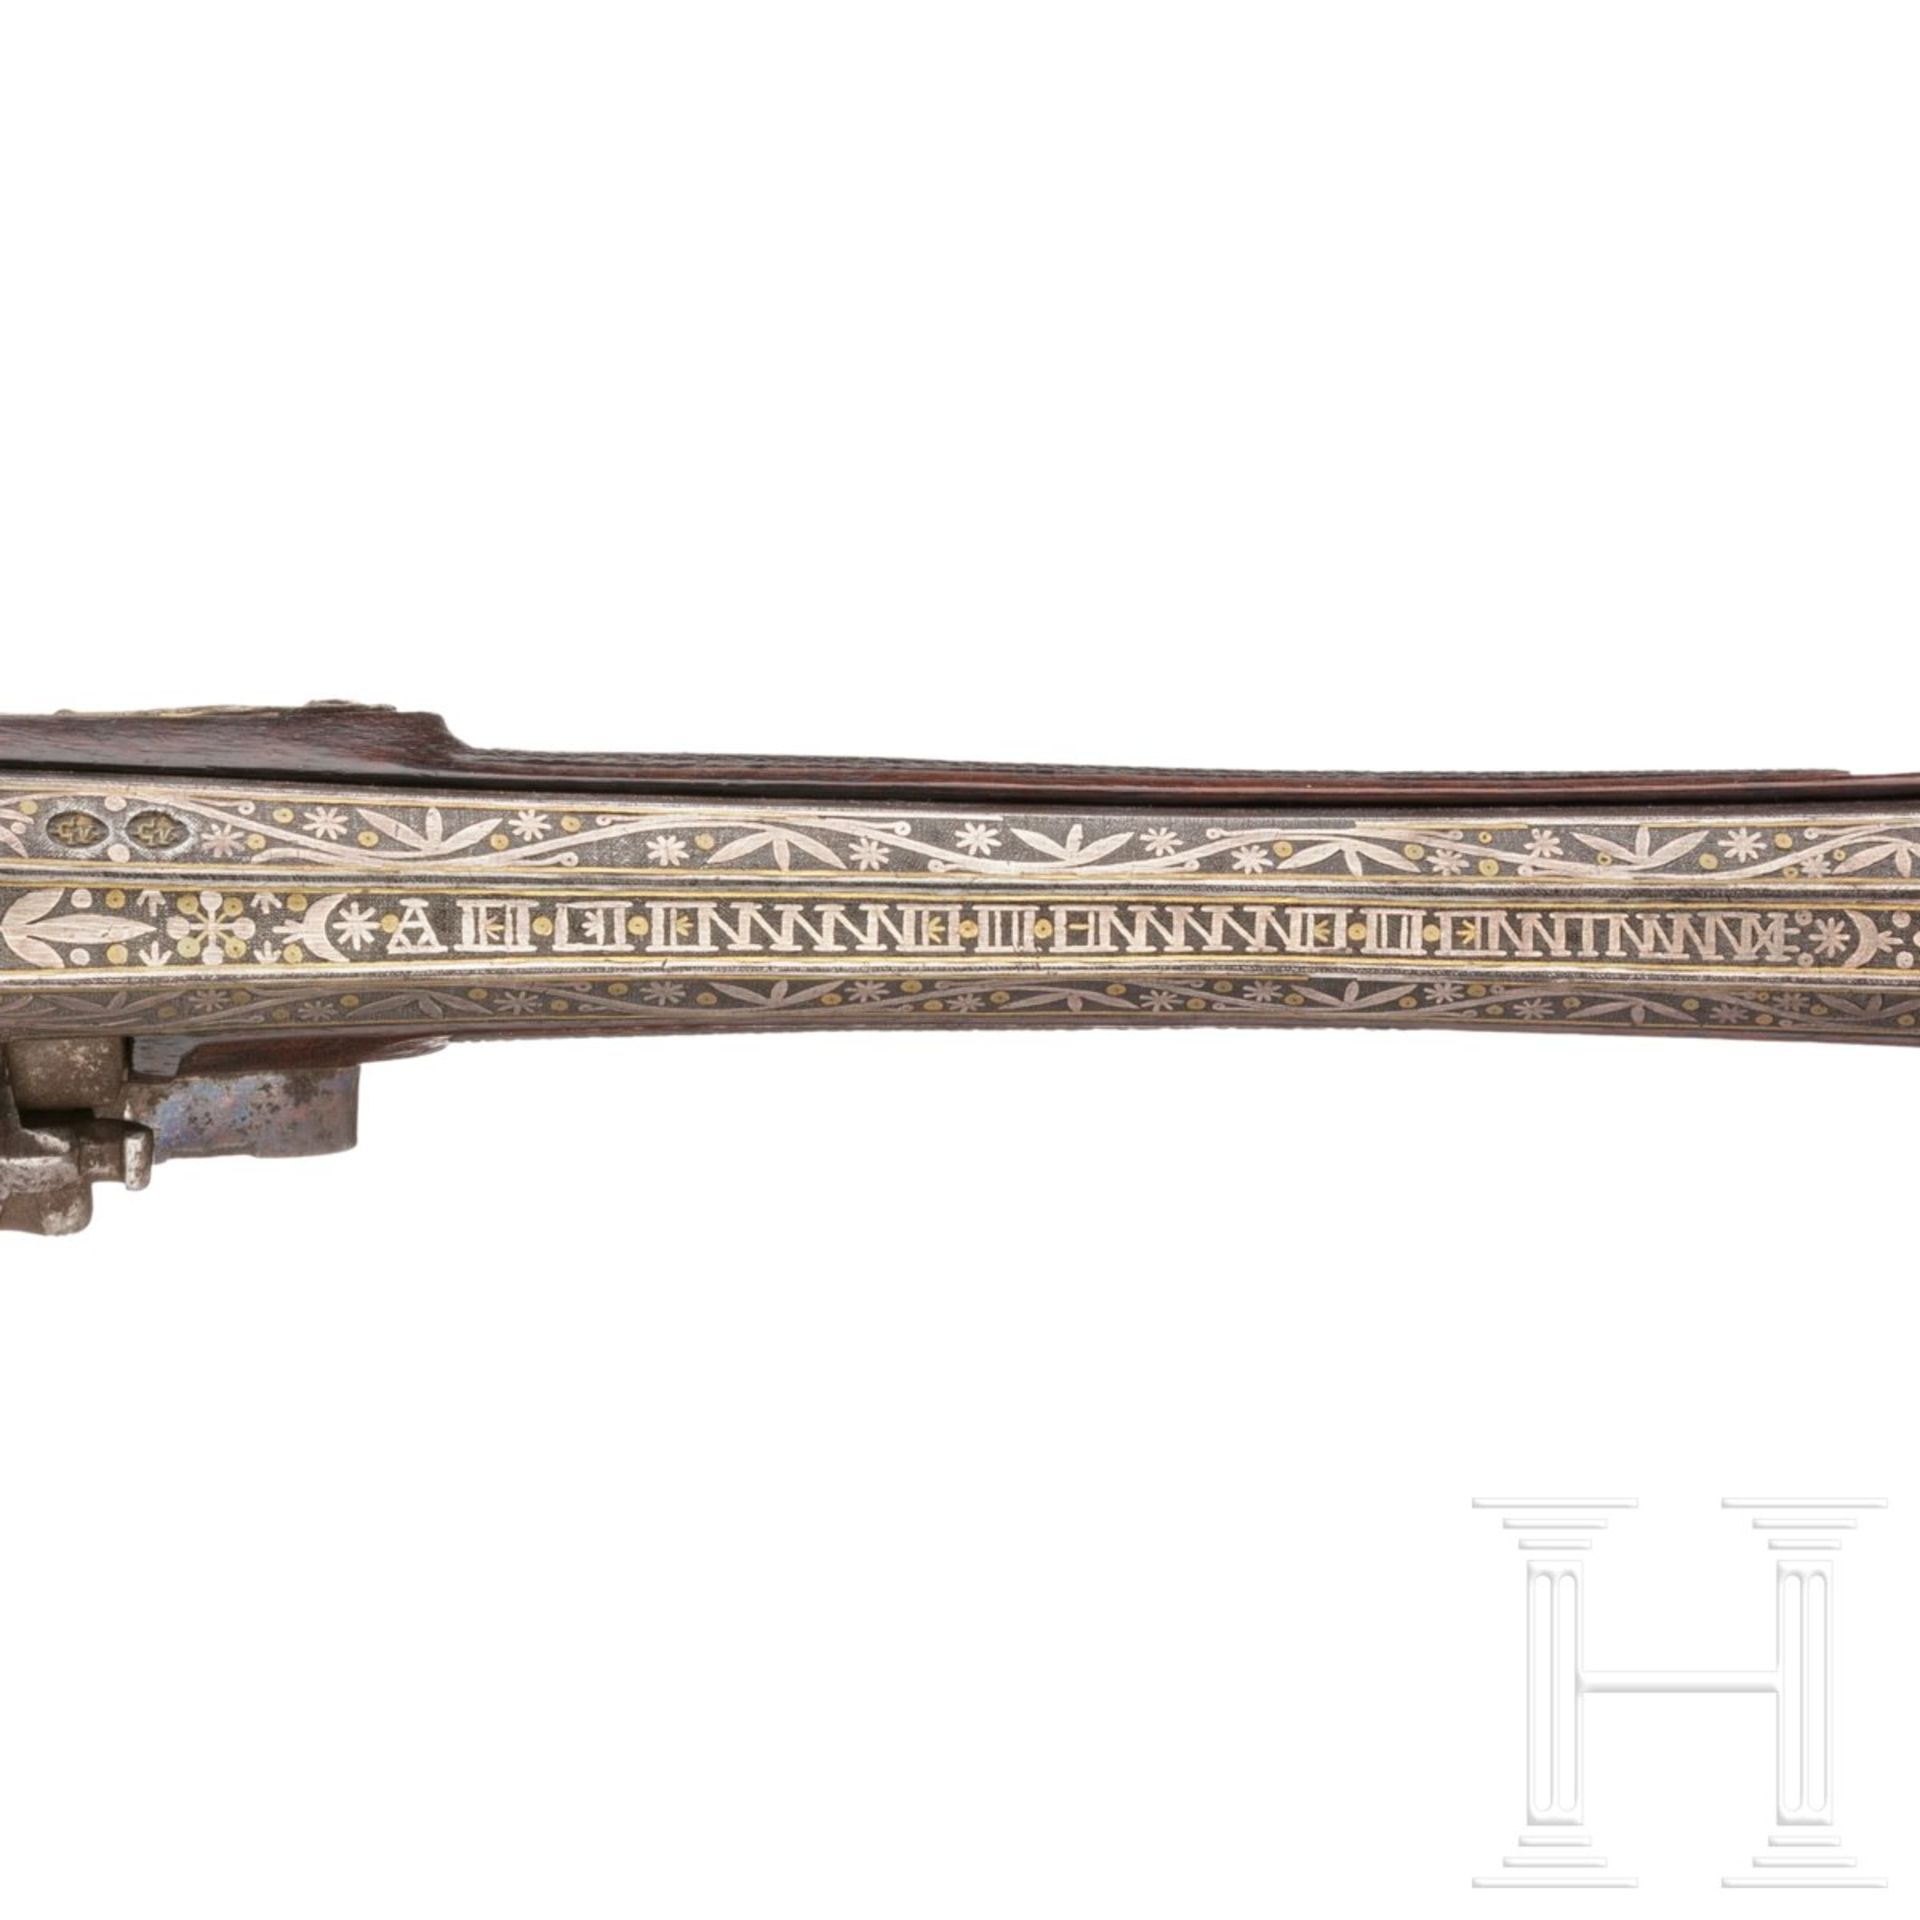 Steinschlosspistole, Frankreich, 1. Hälfte 19. Jhdt., Produktion für den orientalischen Markt/Koloni - Bild 6 aus 6